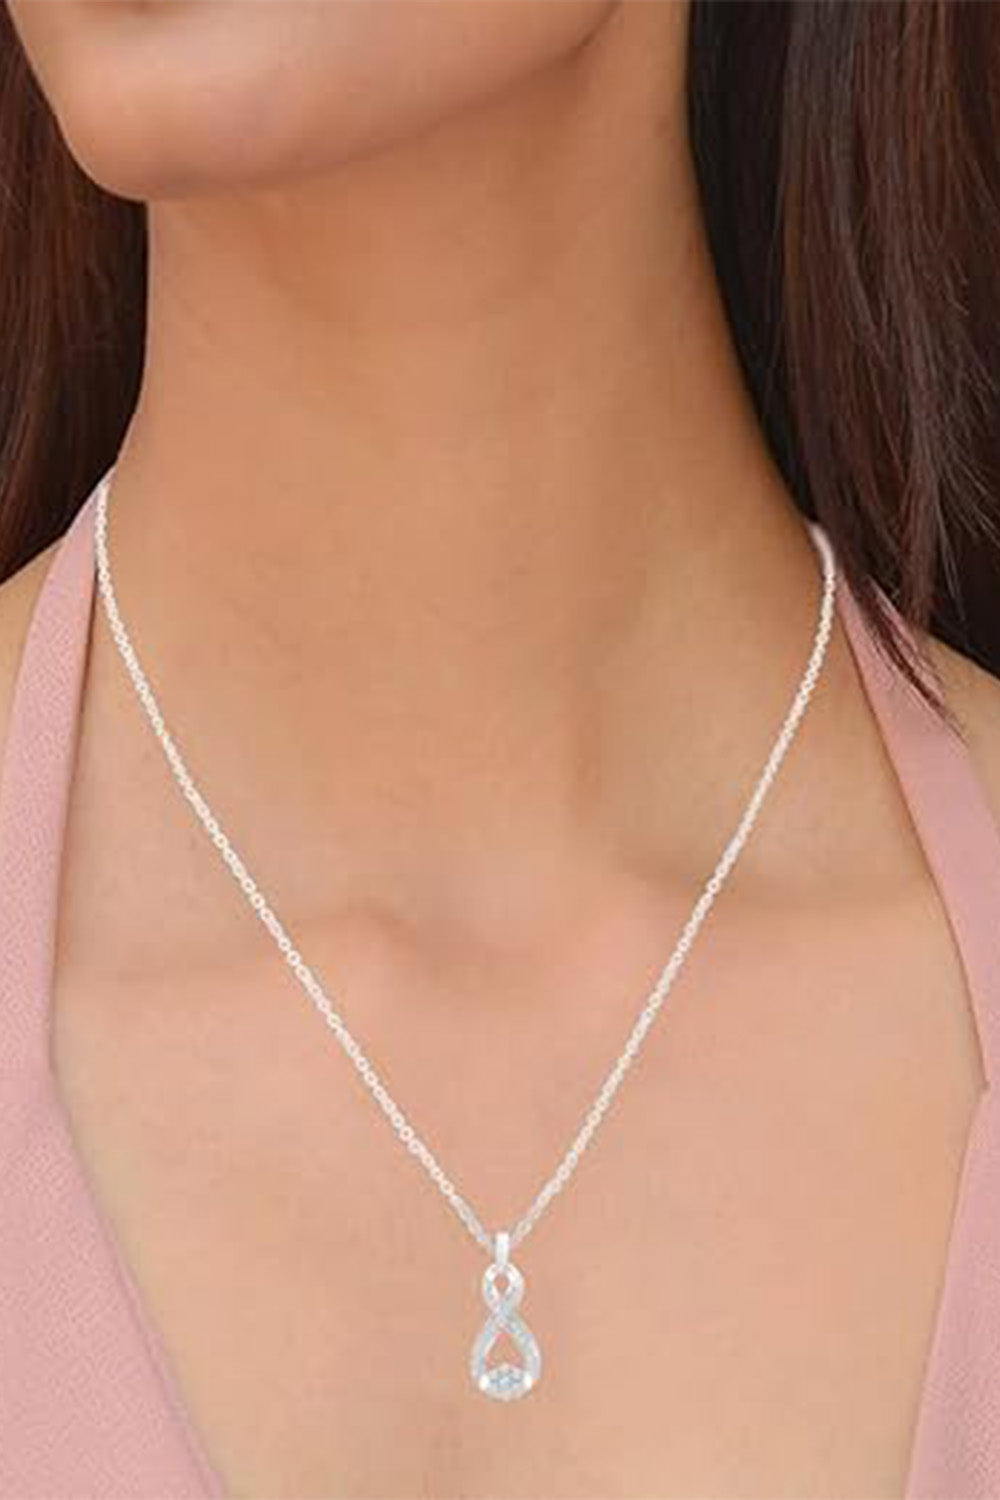 Buy Ladies Infinity Pendant Necklace